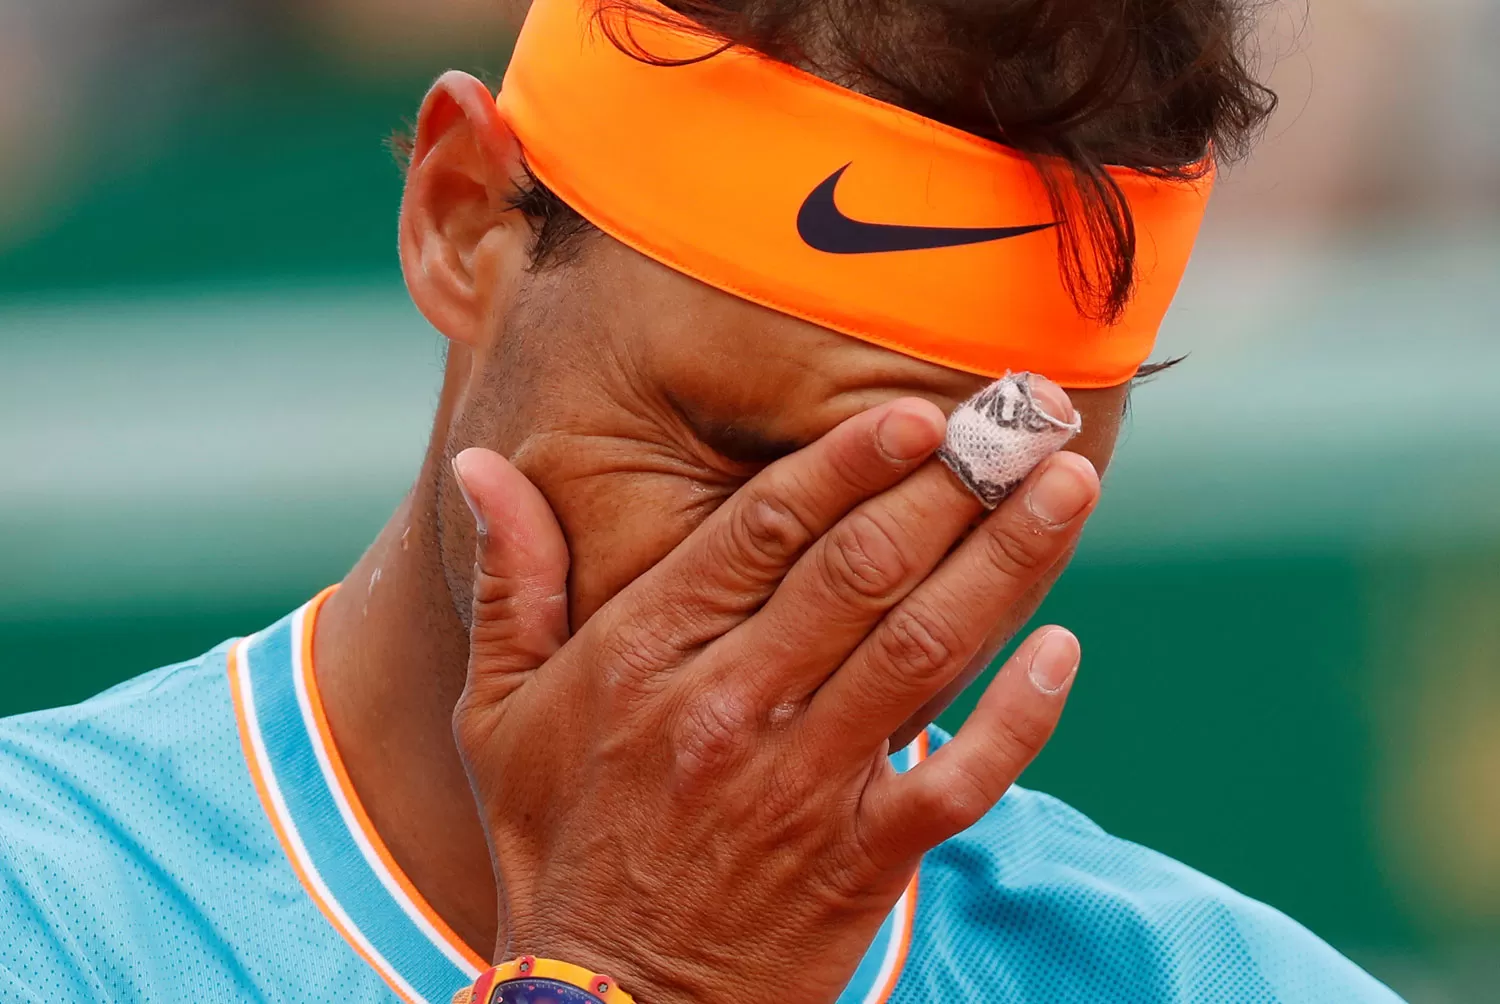 TODO MAL. Nadal jugó mal y no podrá defender su título en Montecarlo.